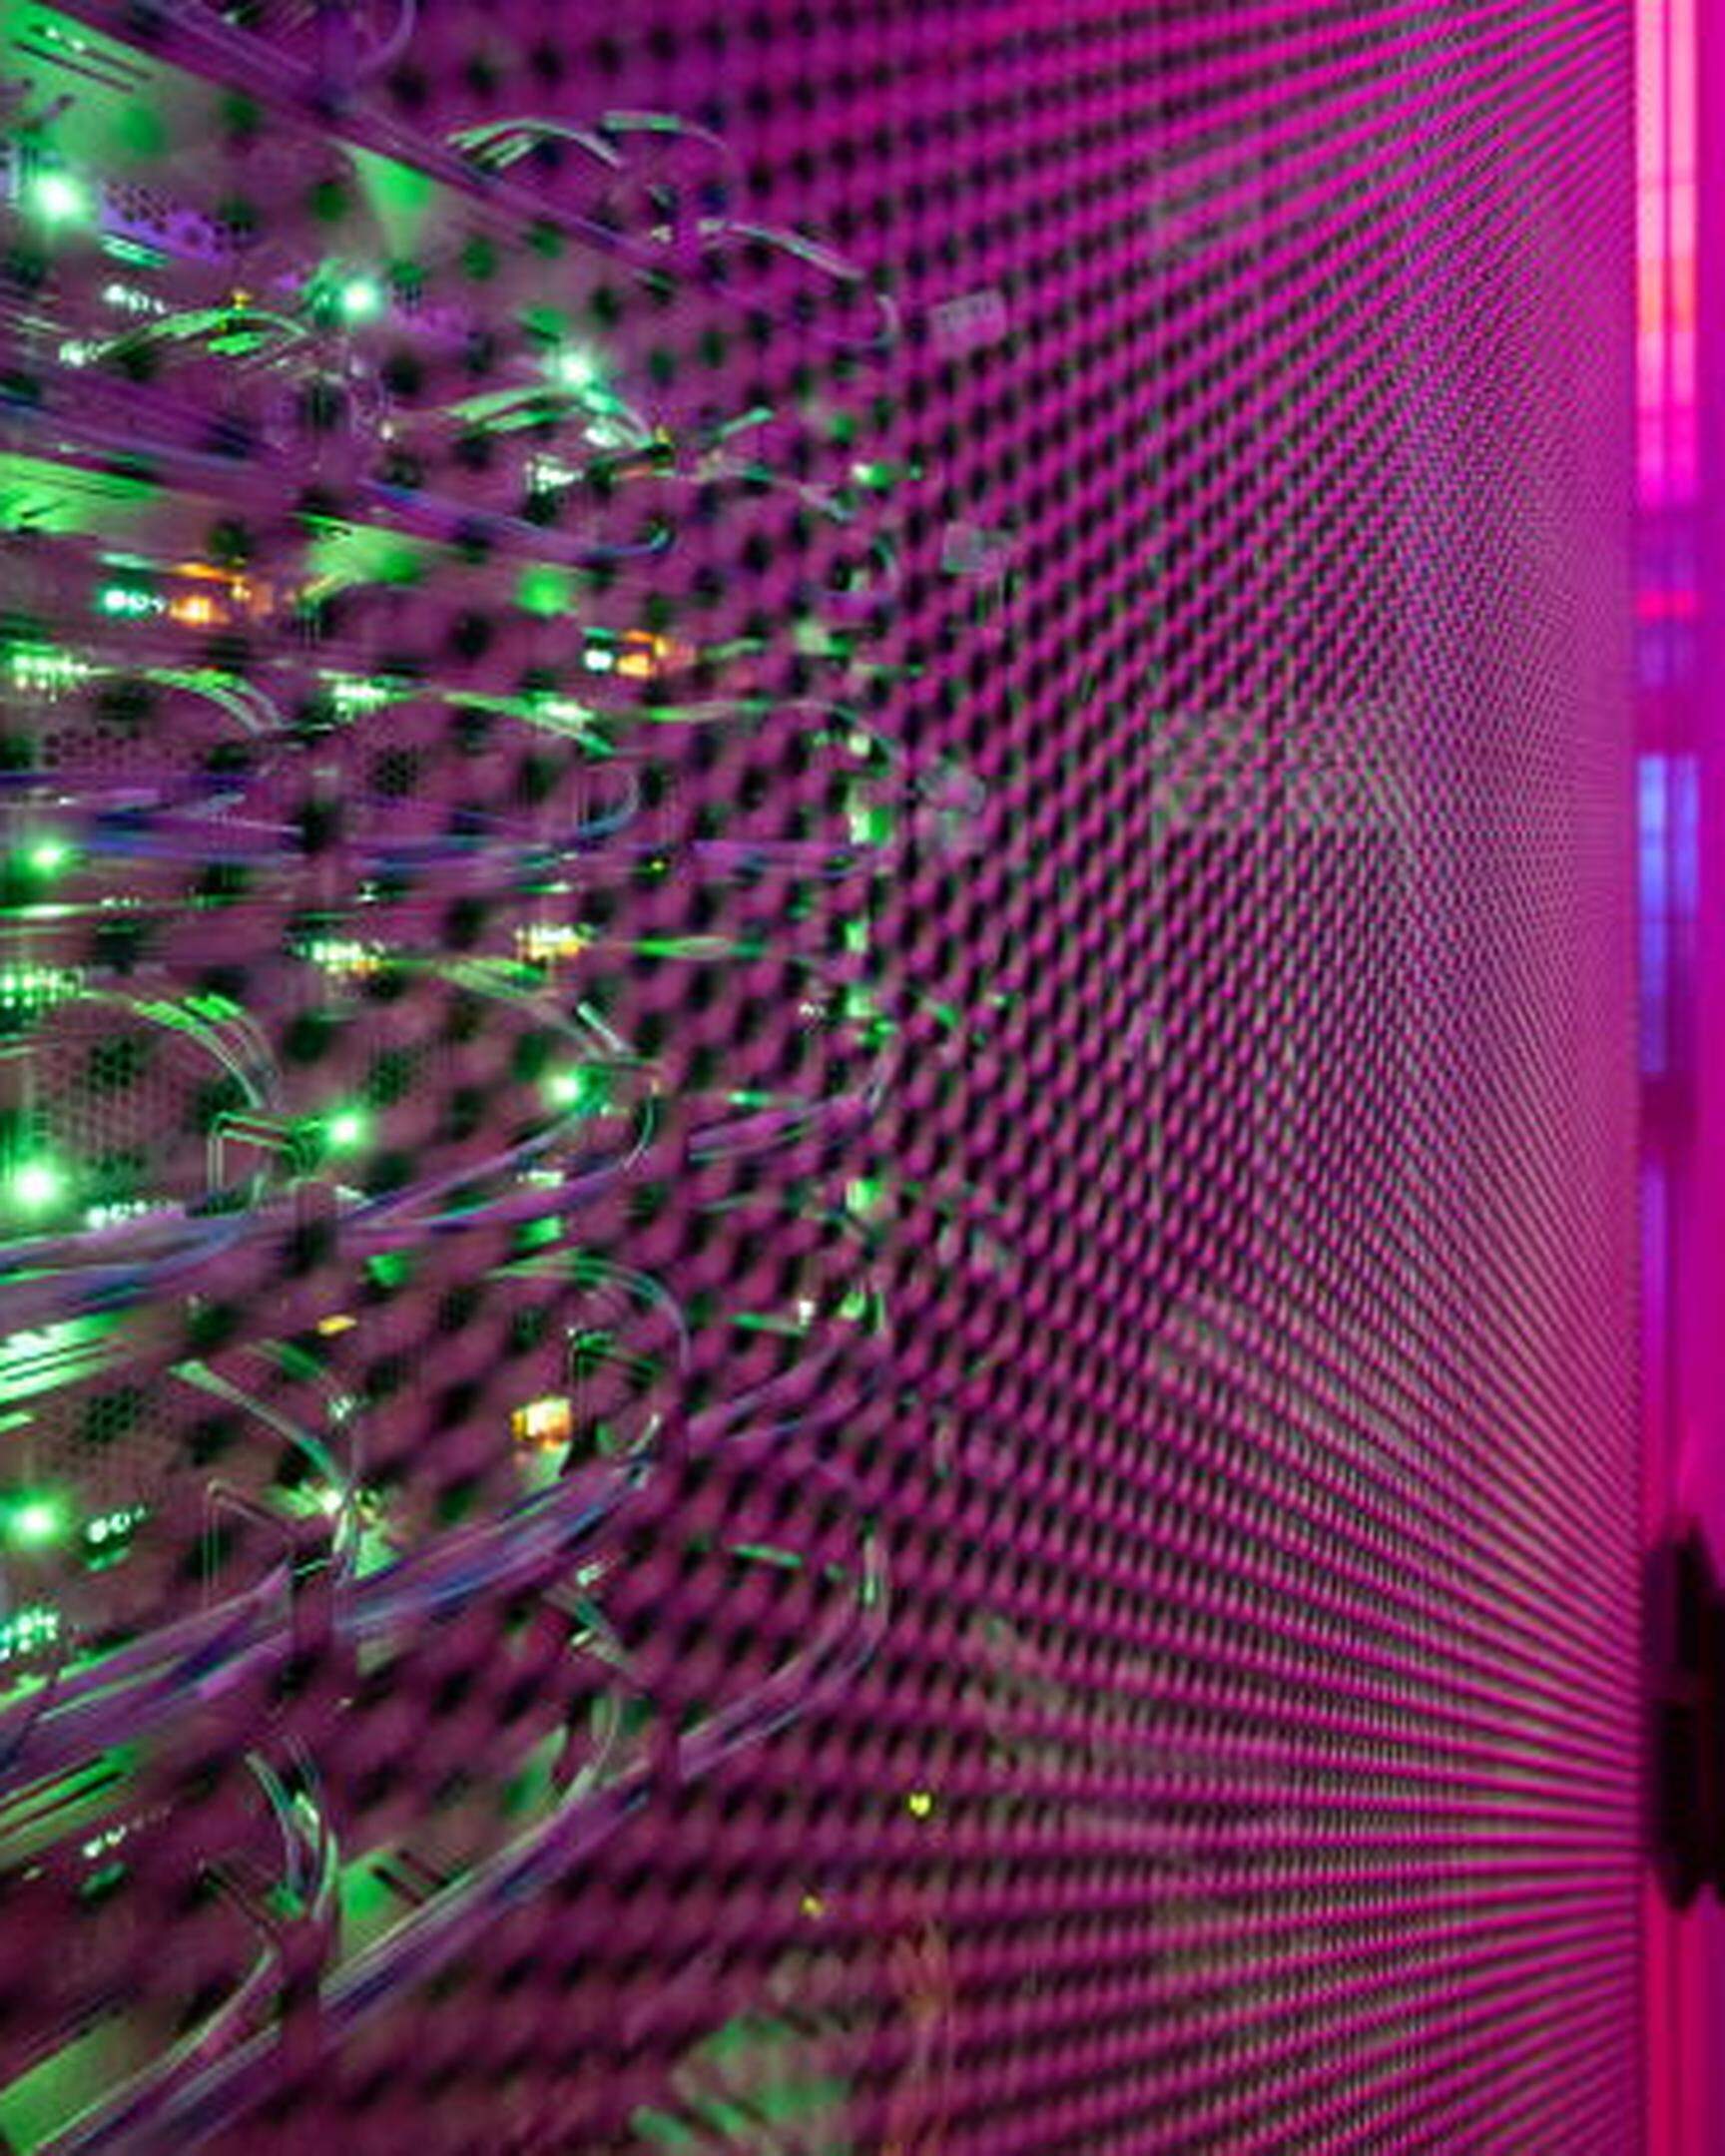 ARCHIV - 23.01.2023, Hessen, Frankfurt/Main: LEDs leuchten in einem Serverschrank in einem Rechenzentrum. Die Mutterfirma von Lidl und Kaufland stellt ihr Digital- und IT-Geschäft auf neue Beine. (zu dpa: «Digitaler Discounter-Spirit - Lidl-Mutter stellt IT-Sparte neu auf») Foto: Sebastian Gollnow/dpa +++ dpa-Bildfunk +++